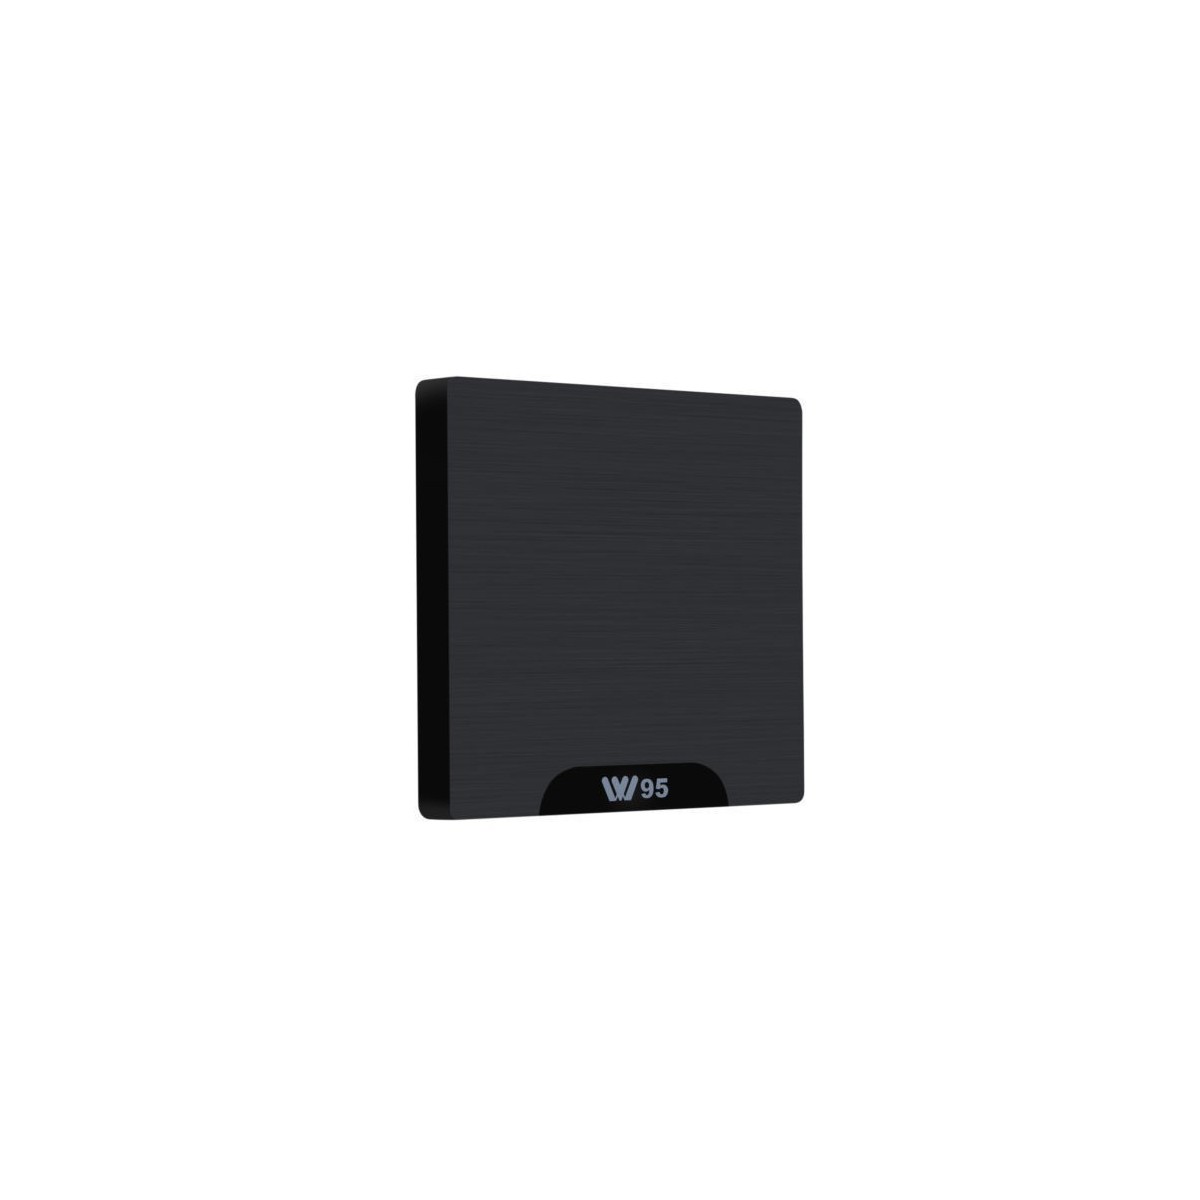 Décodeur multimédias Smart TV Box Android 7.1 W95 1G/8G